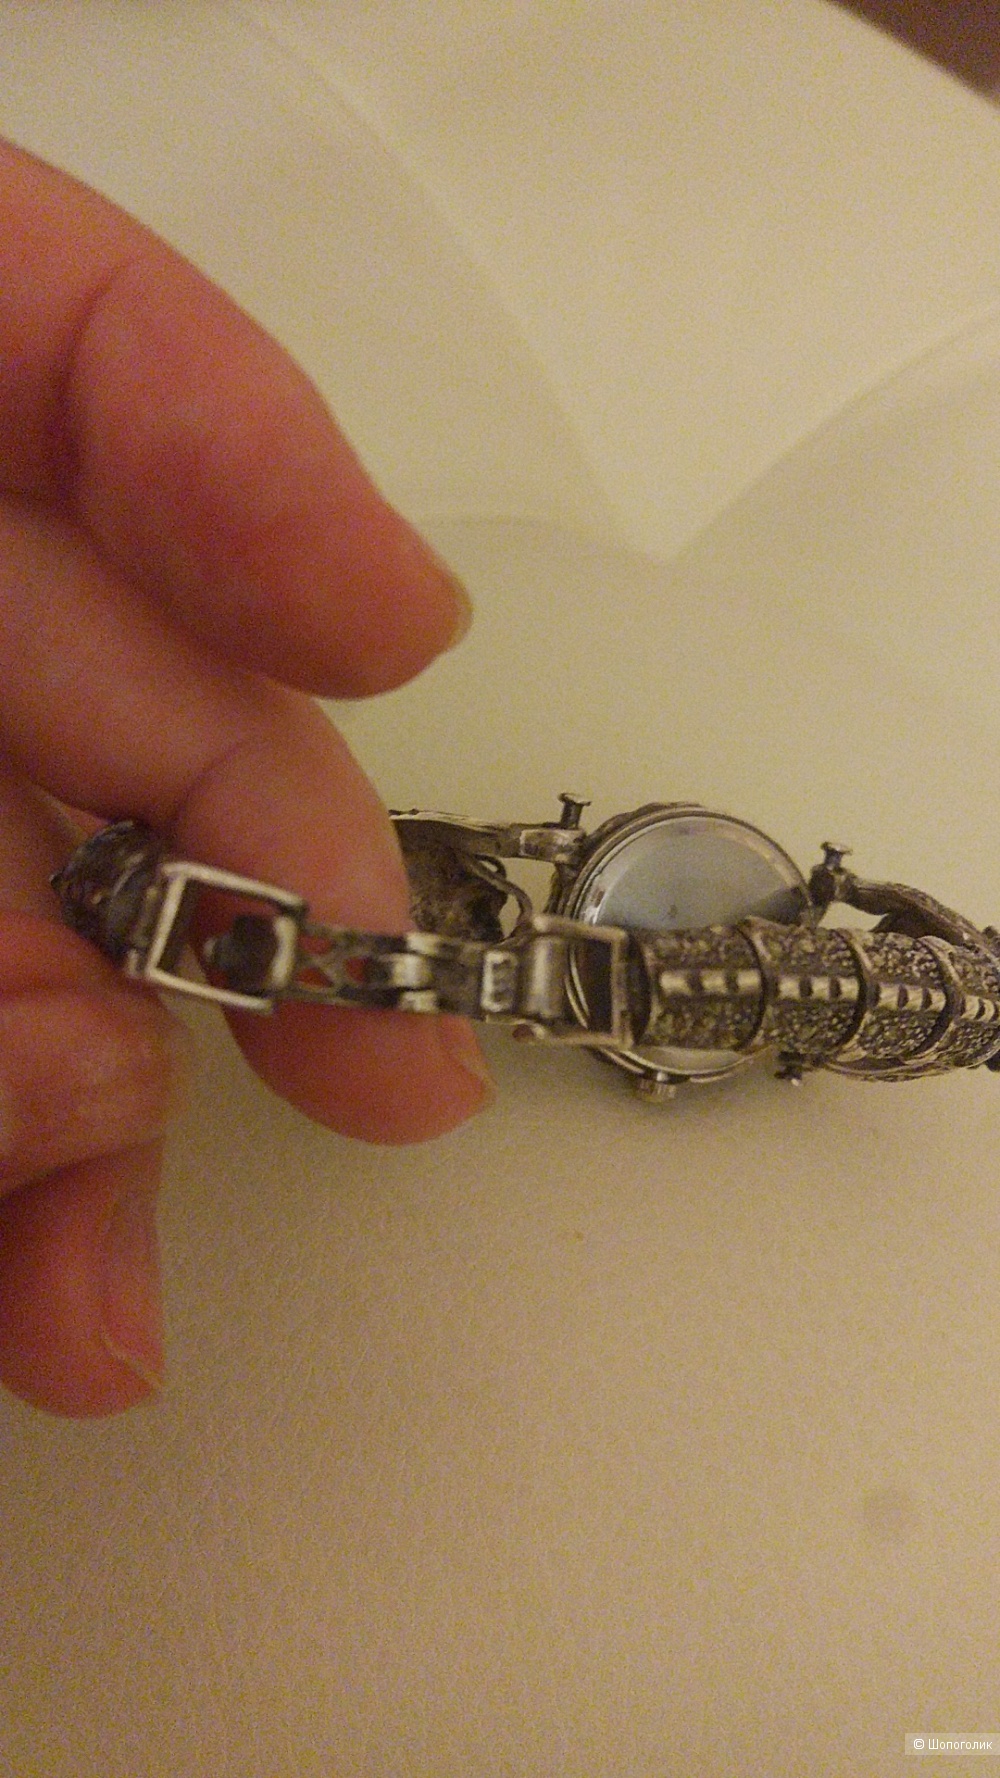 Часы серебро 925 пробы с натуральными камнями "Драконы"